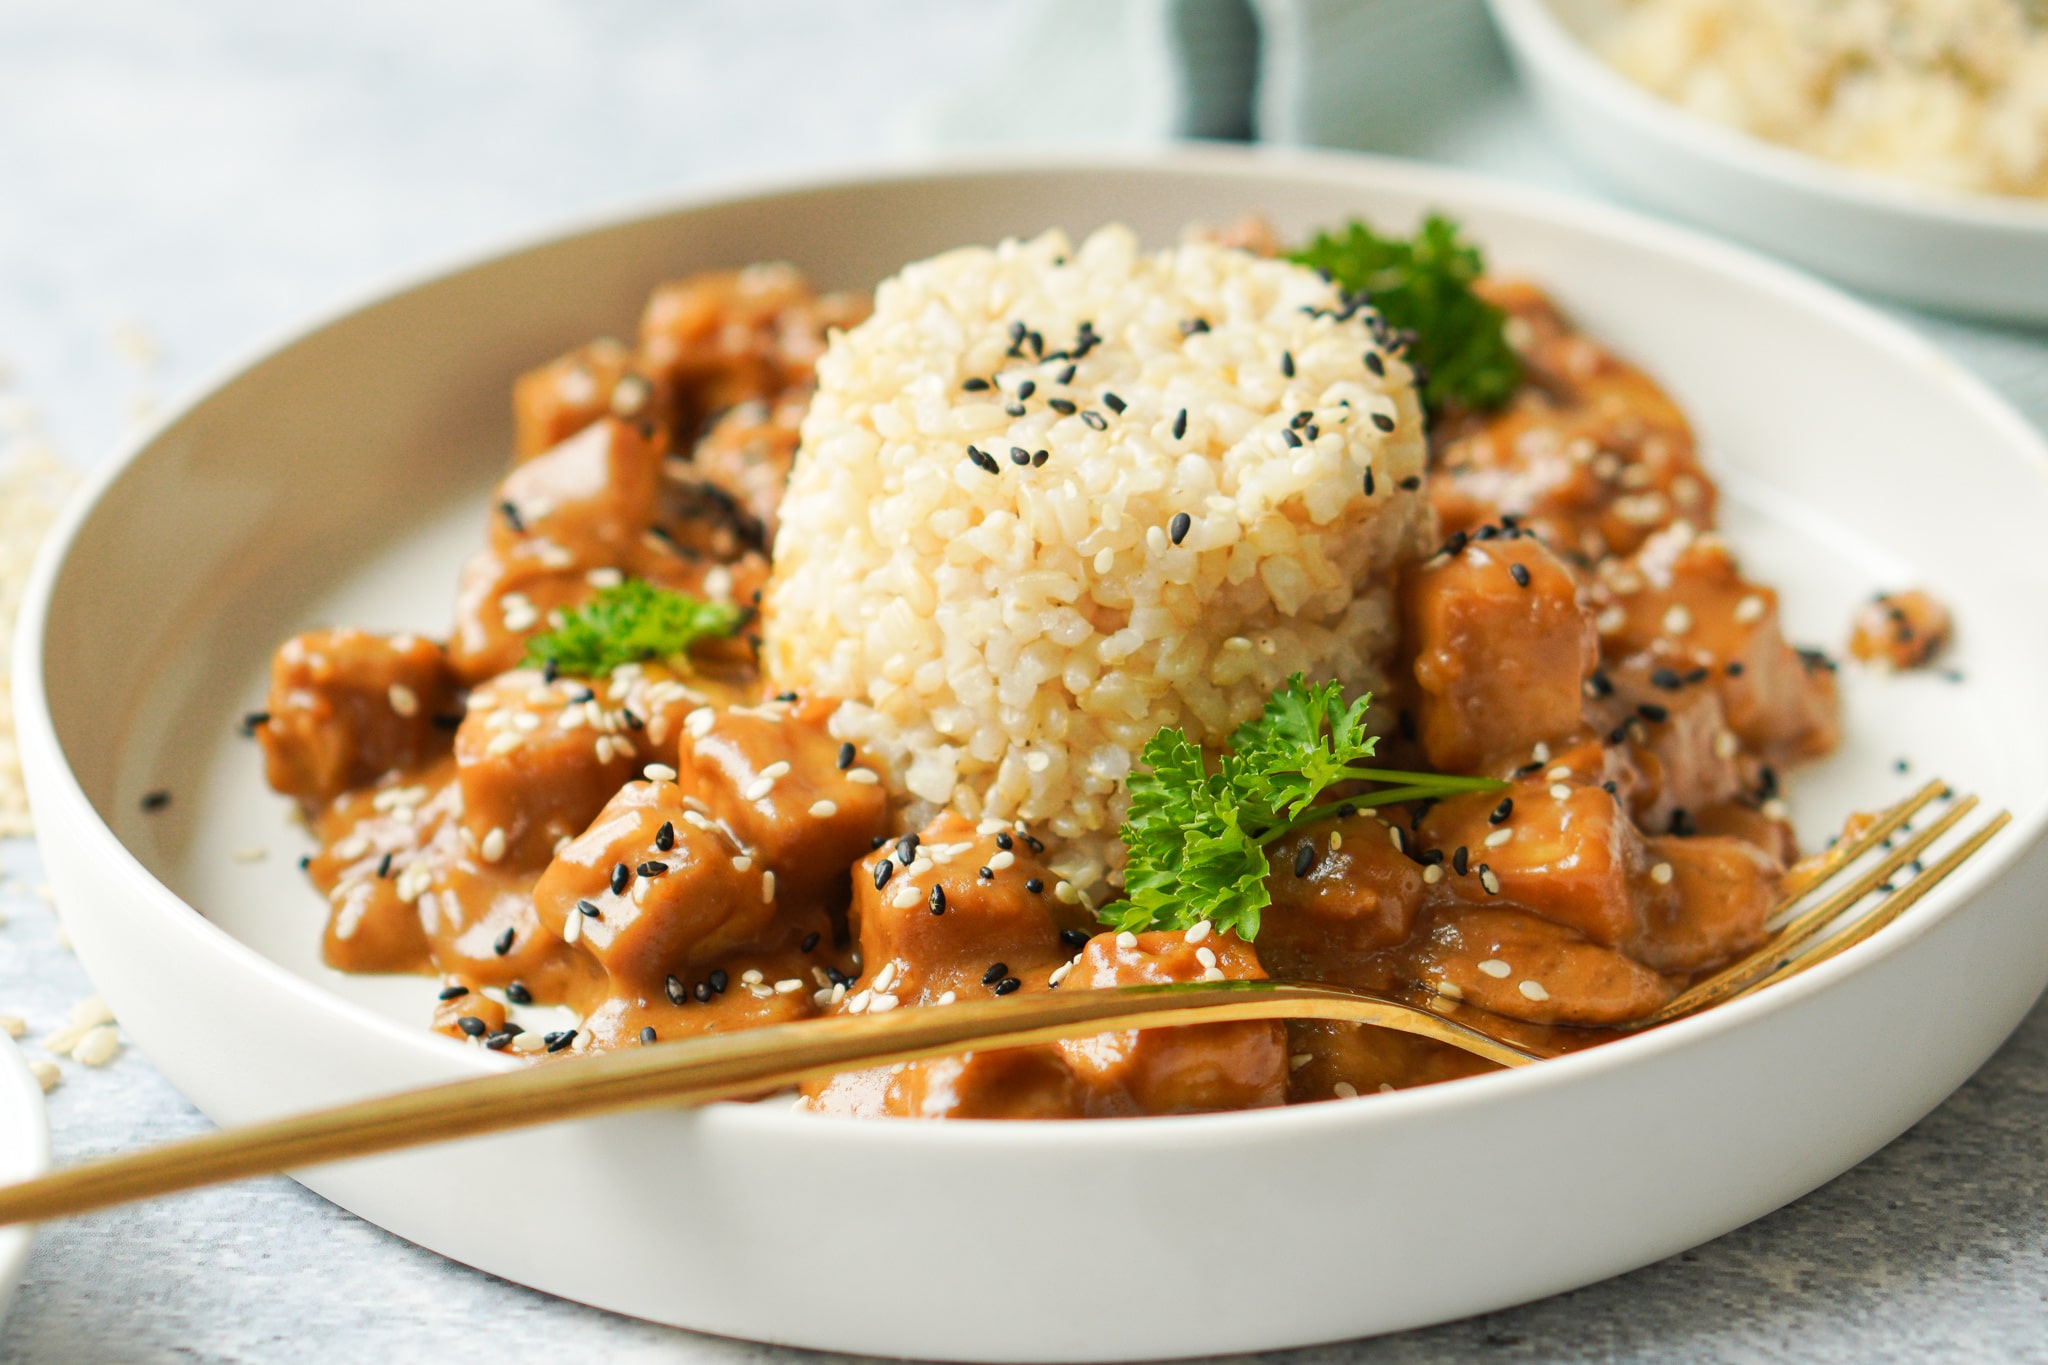 Erdnuss Tofu Curry mit Reis | vegan